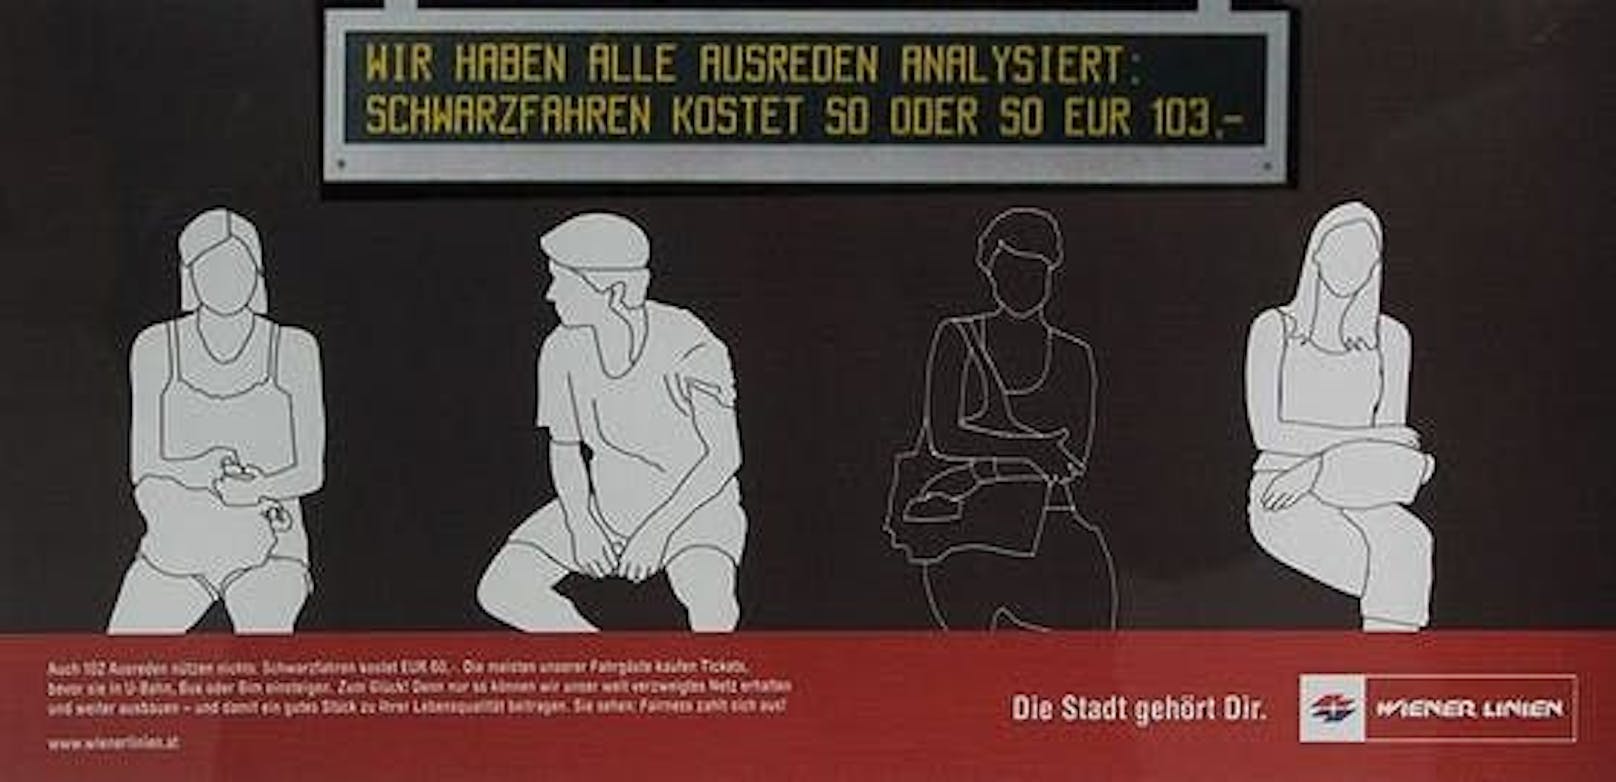 Ein mittlerweile aus der Zeit gekommenes Plakat der Wiener Linien.